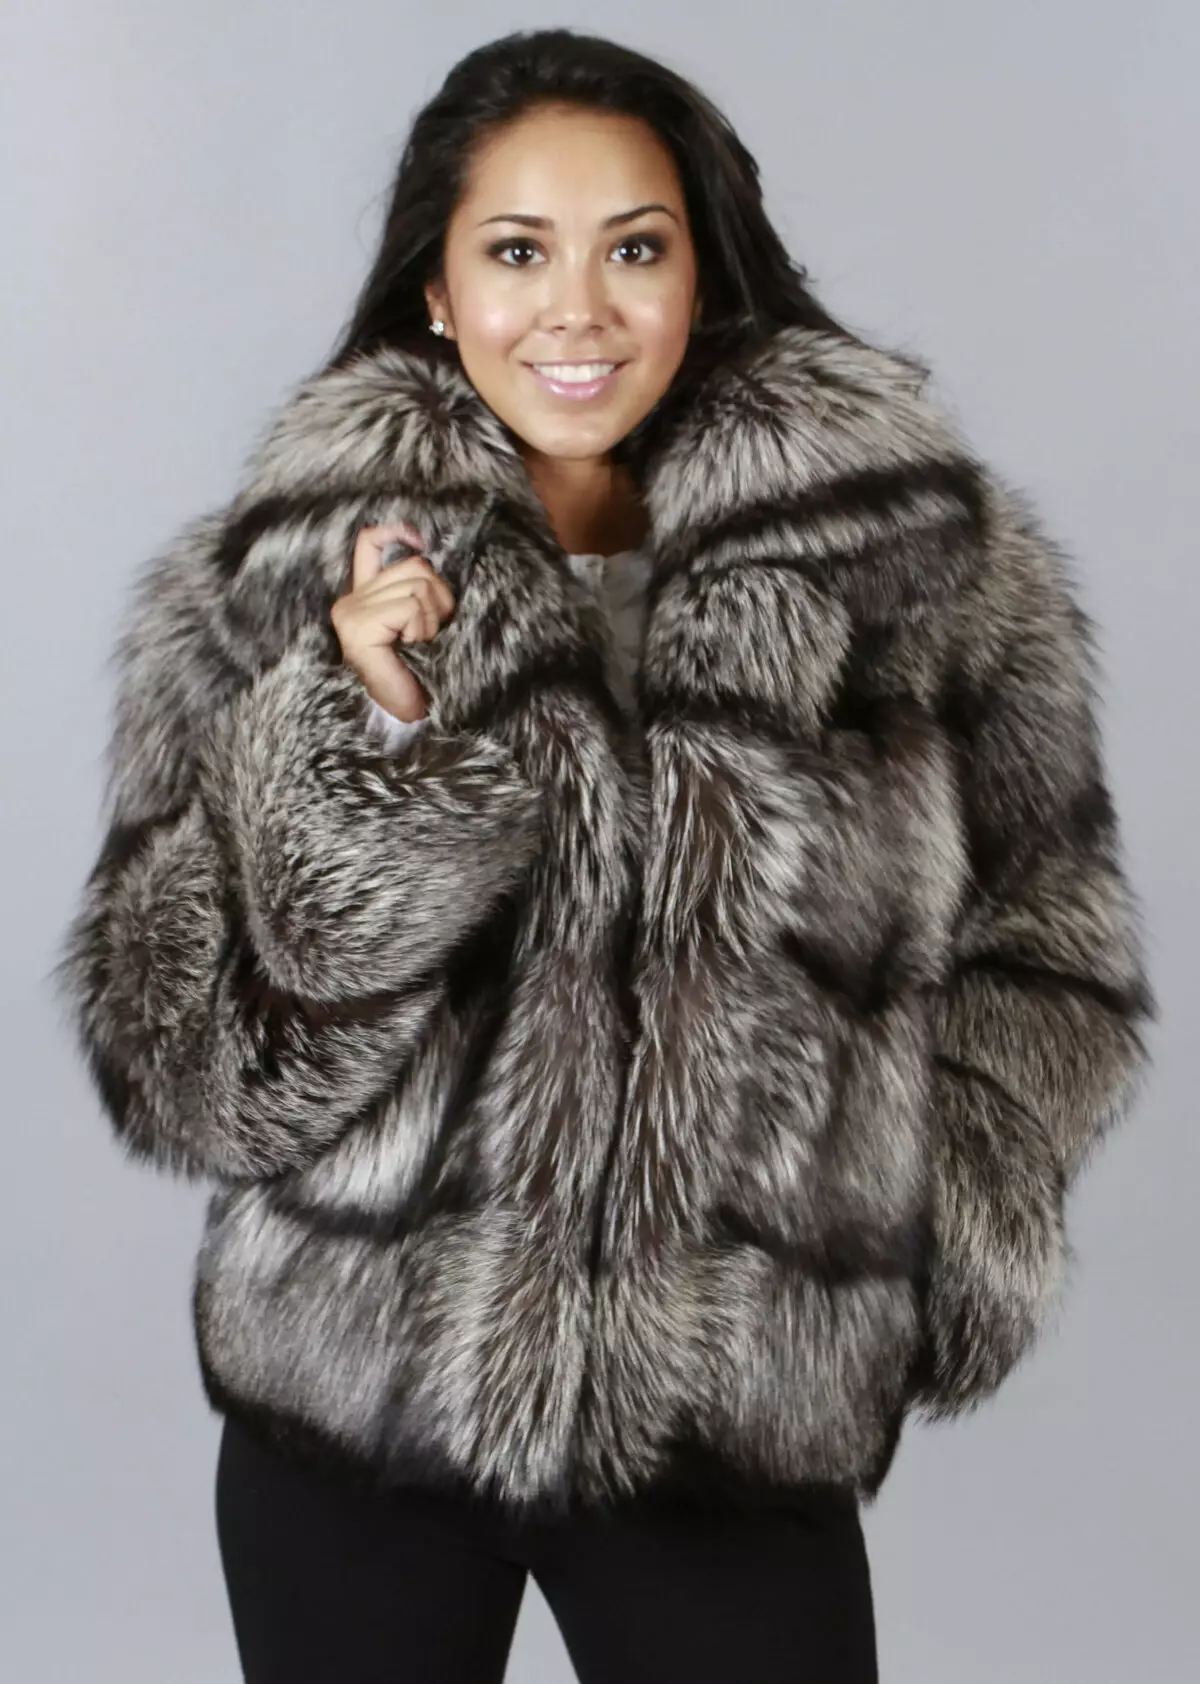 Fur coat mula sa mink pieces (70 mga larawan): Mga Review tungkol sa mink coat pieces habang nagkakahalaga ito 14423_64